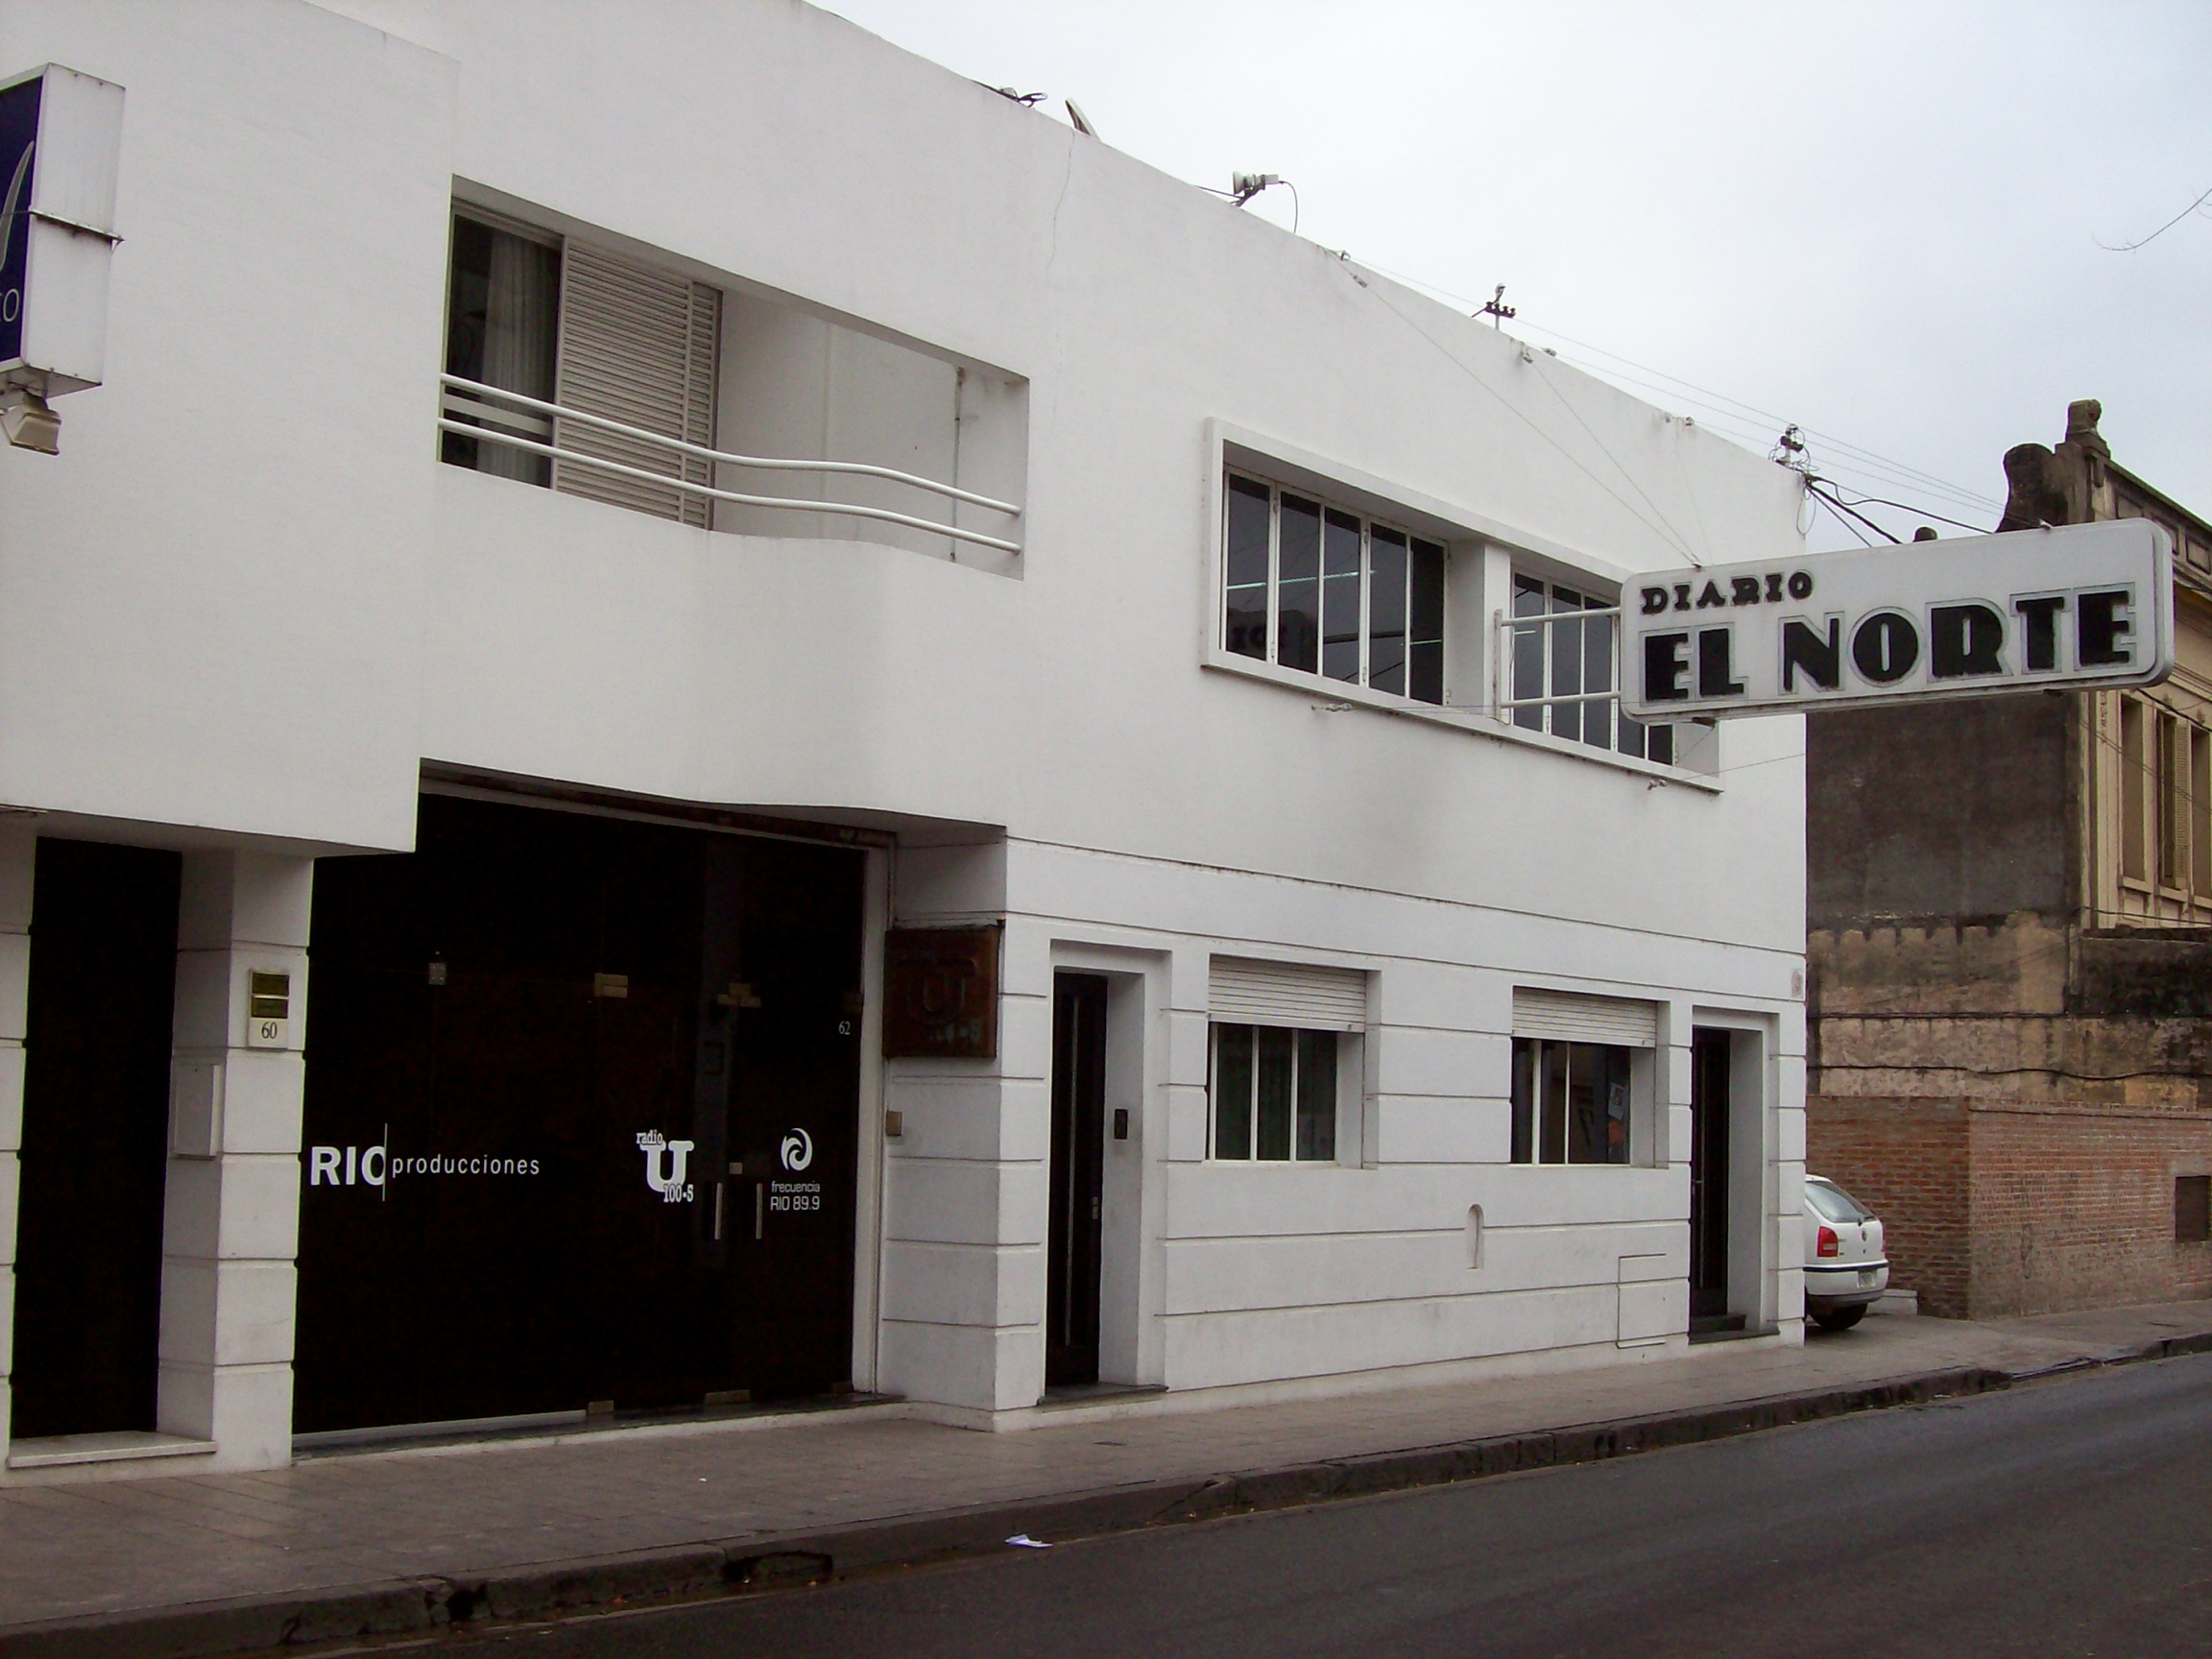 Diario El Norte (San Nicolás) - Wikipedia, la enciclopedia libre